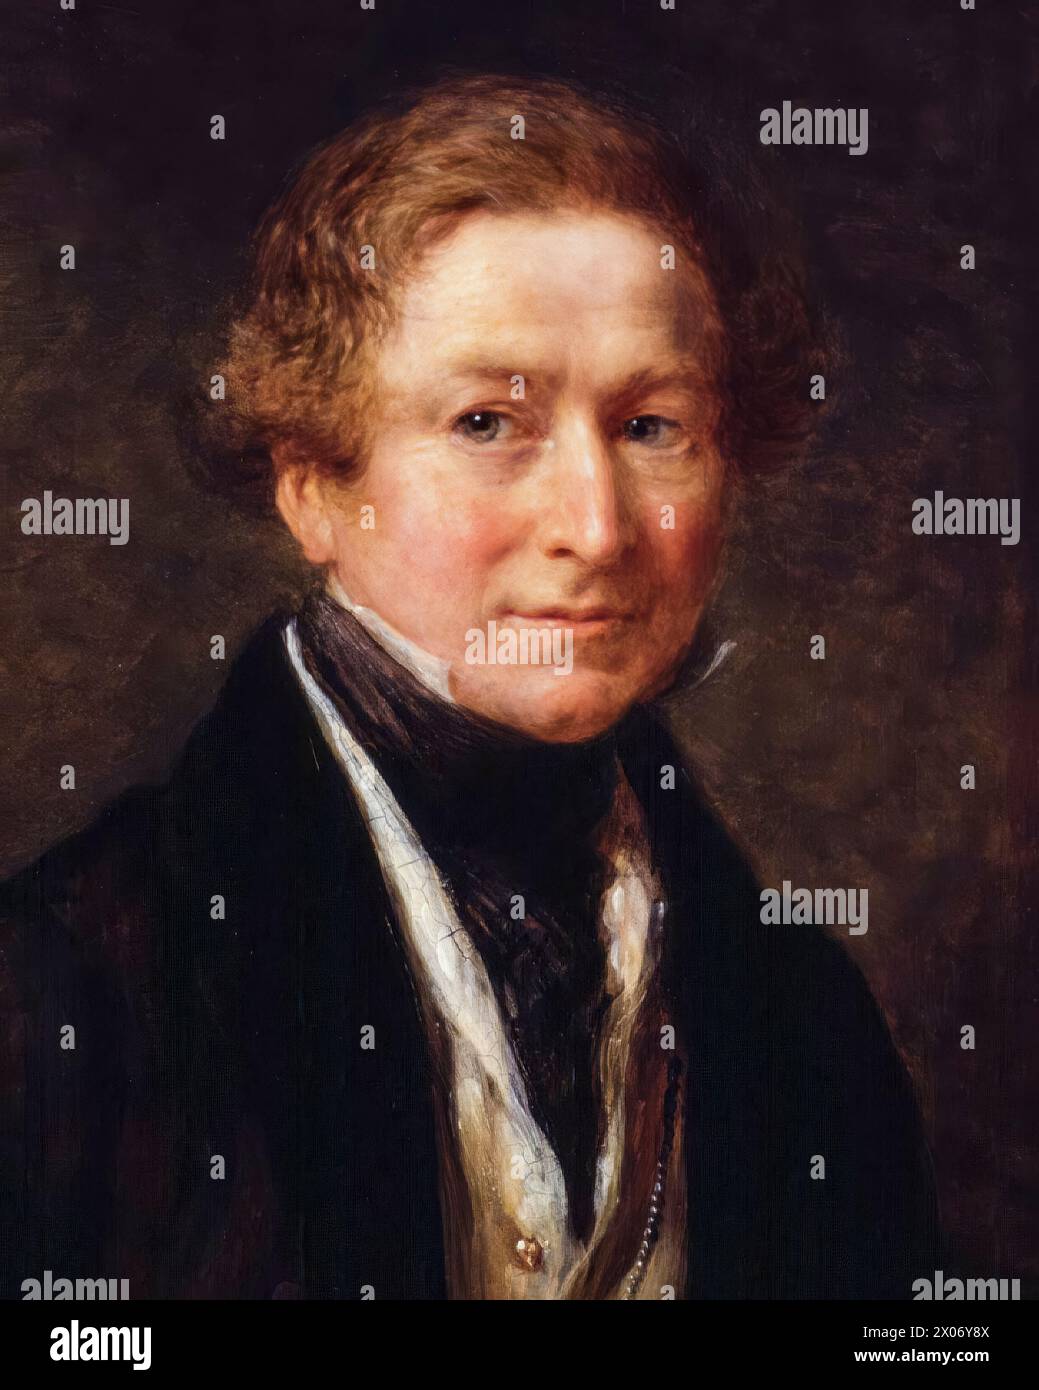 Sir Robert Peel (1788-1850), 2e baronnet, deux fois premier ministre du Royaume-Uni 1834-1835 et 1841-1846, portrait peint à l'huile sur panneau par John Linnell, 1838 Banque D'Images